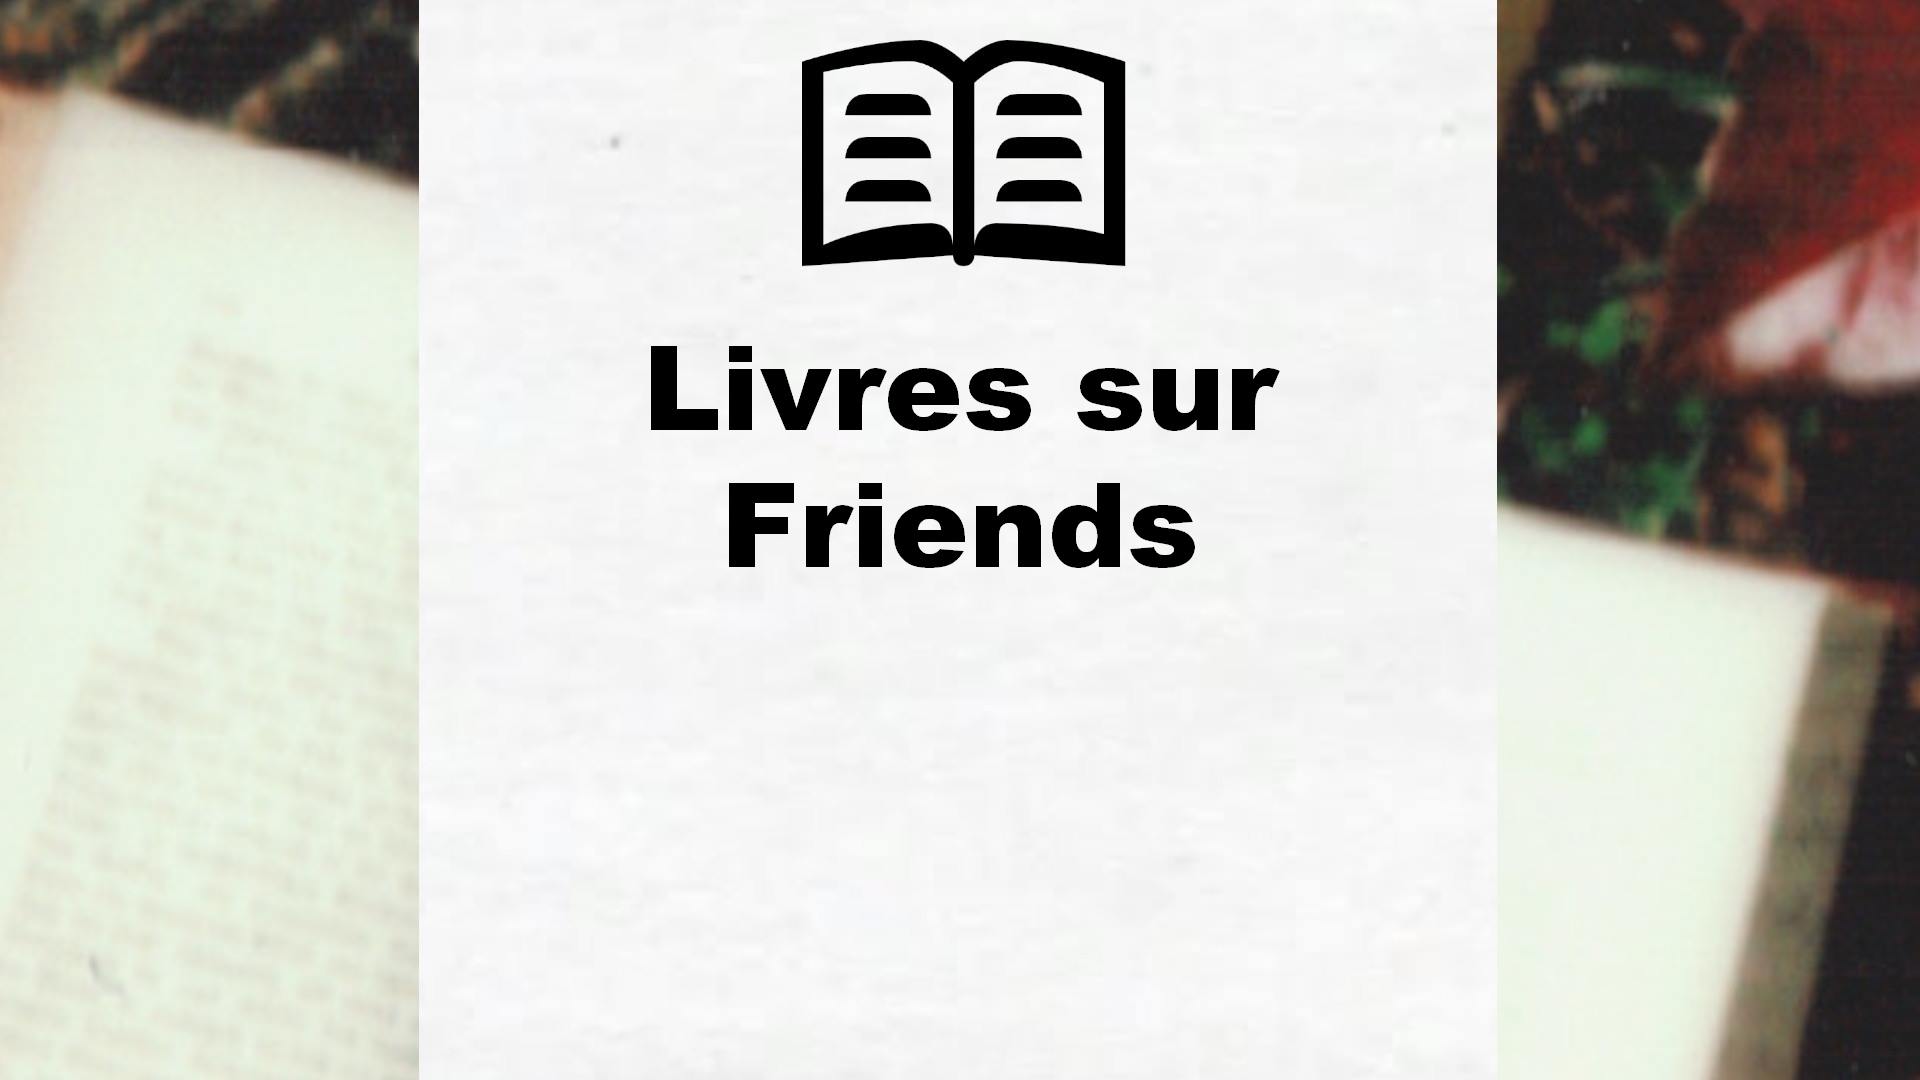 Livres sur Friends